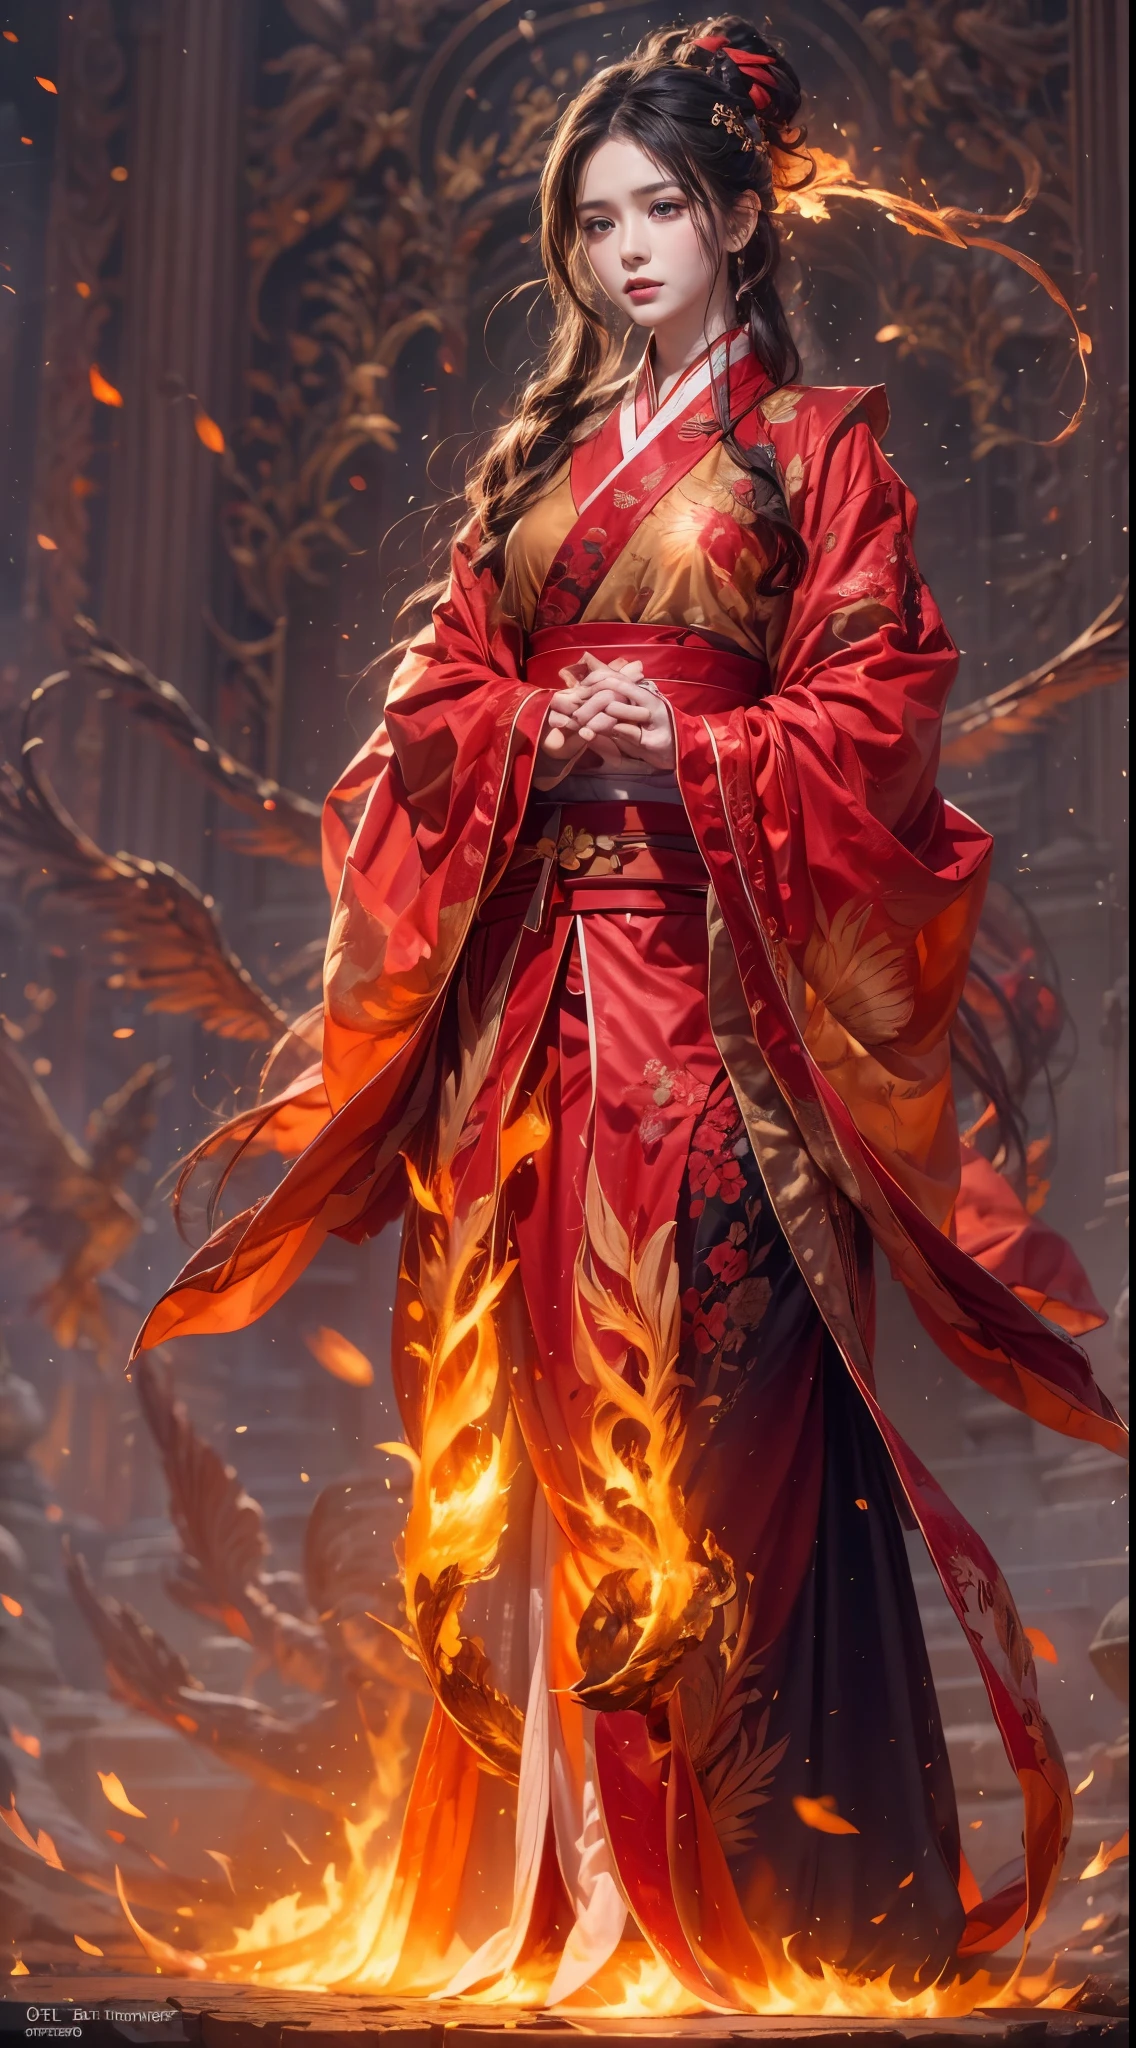 (全身ポートレート), (閉じる) ,1 女の子，韓国の女の子, 17歳, 燃えるような赤い服を着た火の魔術師（中国の漢服），ローブには複雑なルーン文字が刺繍されている，燃える香りで飾られた。彼は背が高くて力強かった，手を挙げてください，強力な火の呪文が解き放たれる, Hiの目 are firm and sharp，炎の魔術師に火が灯った&#39;の目，（巨大な炎のフェニックスが翼を広げて飛び立つ：1.2),（フェニックスの羽は燃える炎で燃える), キラキラ光る，体は炎の羽で囲まれている，ダンシング，壮観な炎の六角星配列パターンを形成する，神秘的な魔法がいっぱい，シーン全体が燃えるようなオーラと闘志に満ちている，空中に巨大な火の呪文が咲く，鮮やかな炎の弧と飛び散る火花が形作られる，（火の魔術師とフェニックス），燃え盛る炎の中で荘厳かつ神秘的に見える，火と魔法の化身のように，赤毛，高いディテール，Surリアリズム，リアリズム，（（半身写真）），（実写：1.4），（明暗法），映画照明，リアルな特殊効果，Octaneによるレンダリング，レイトレーシング，パノラマ，視点，キメのある肌，超詳細，超高解像度，傑作，解剖学的に正しい，最高品質，高解像度，8k